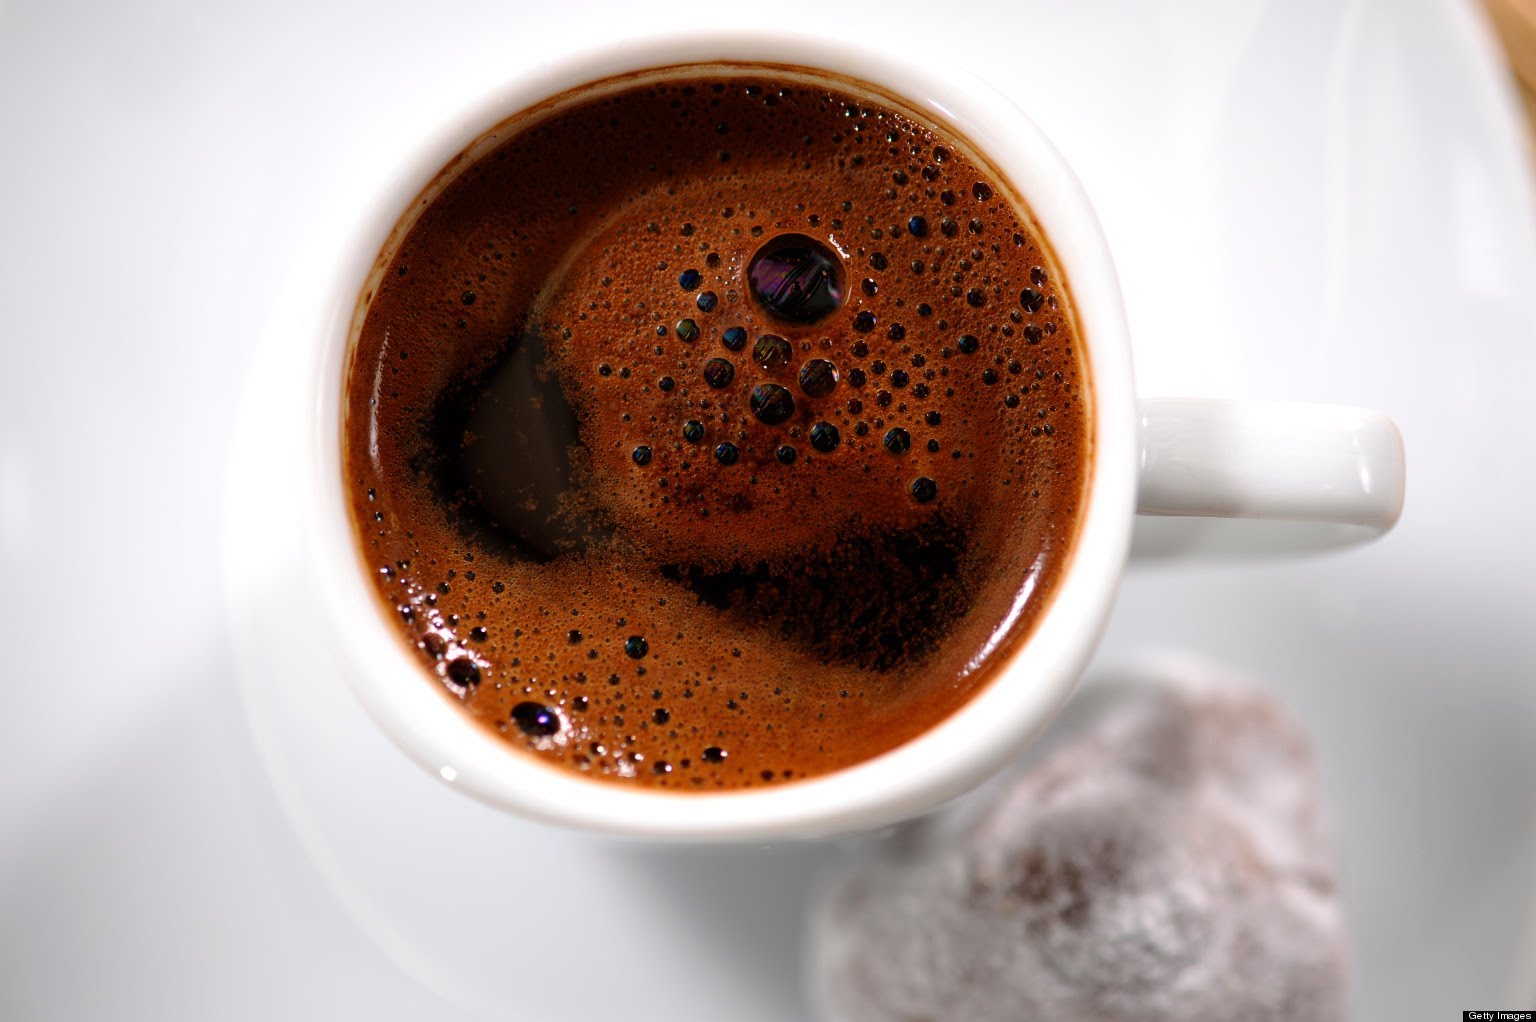 صور عن القهوة , احلي صور لعشاق القهوه المنام